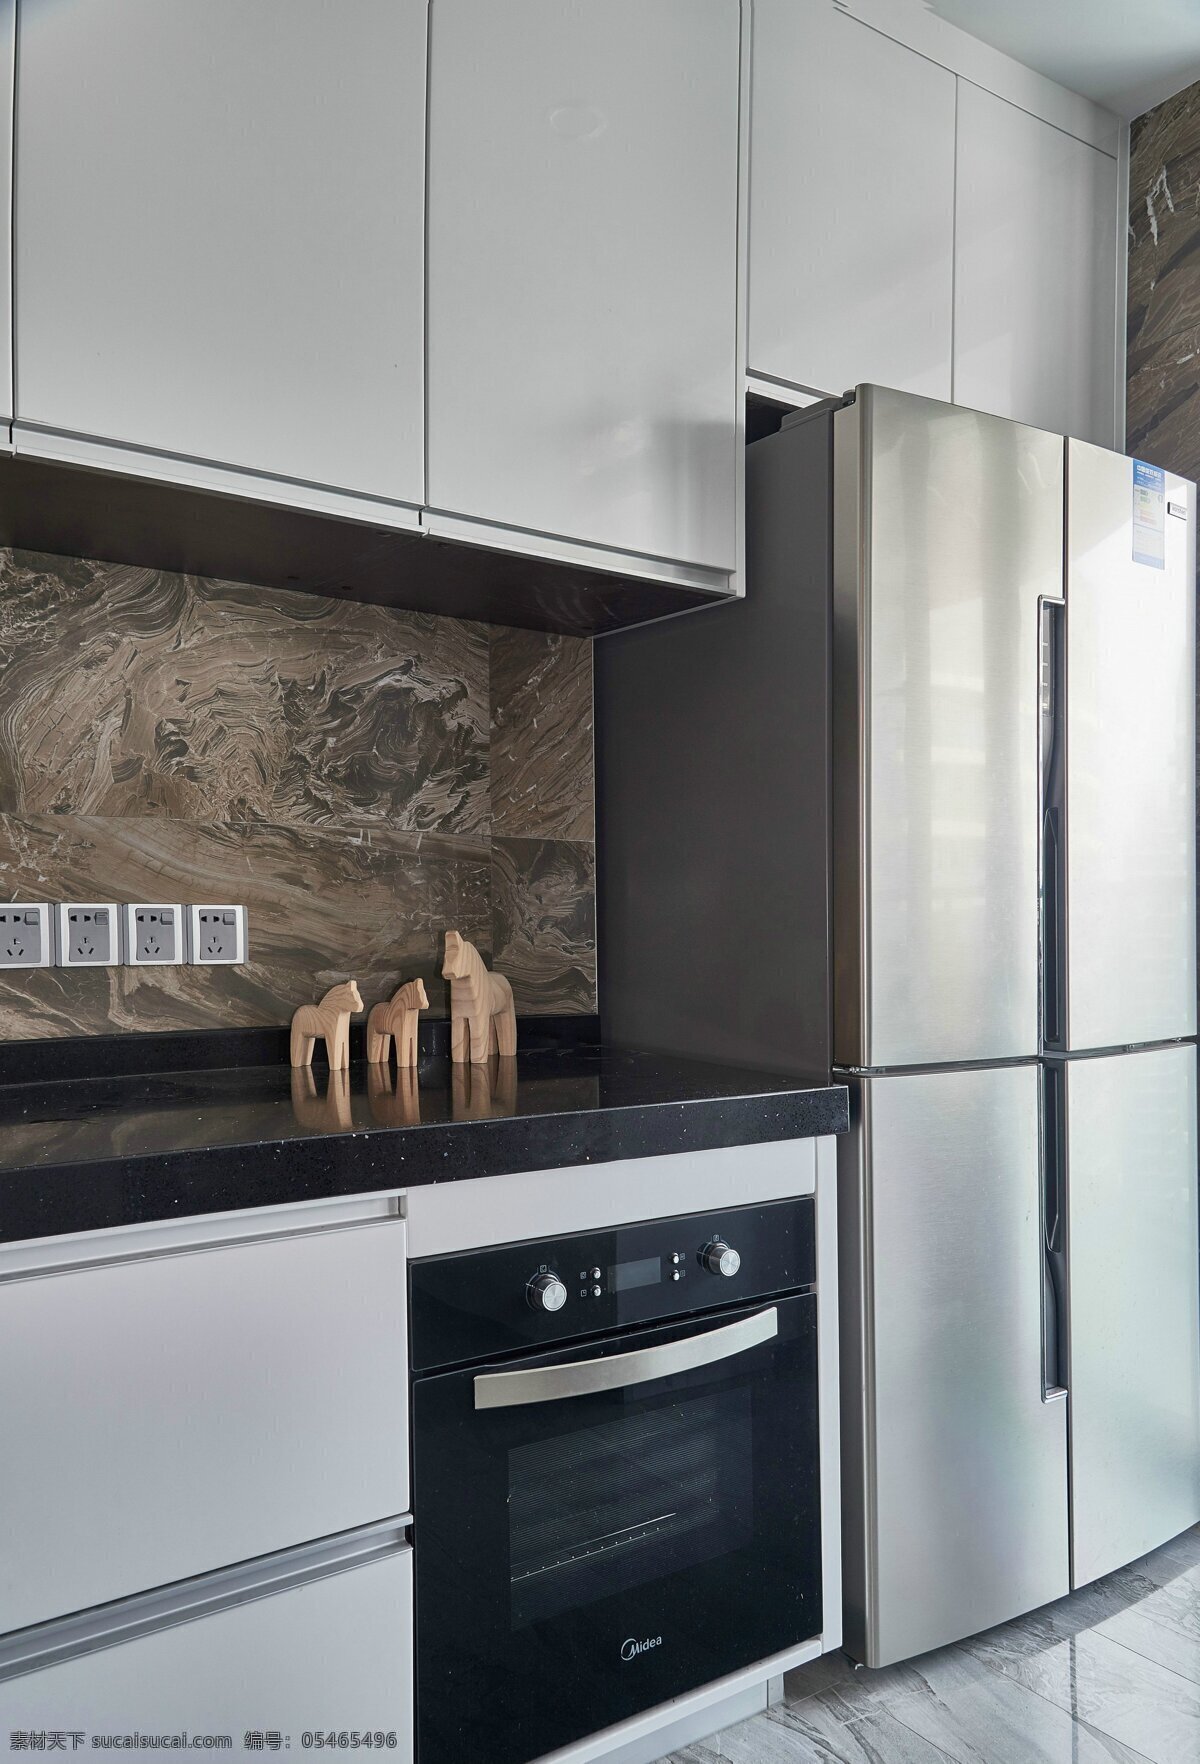 现代 干练 厨房 室内装修 效果图 双开门冰箱 厨房装修 纯色灶台 大理石地板